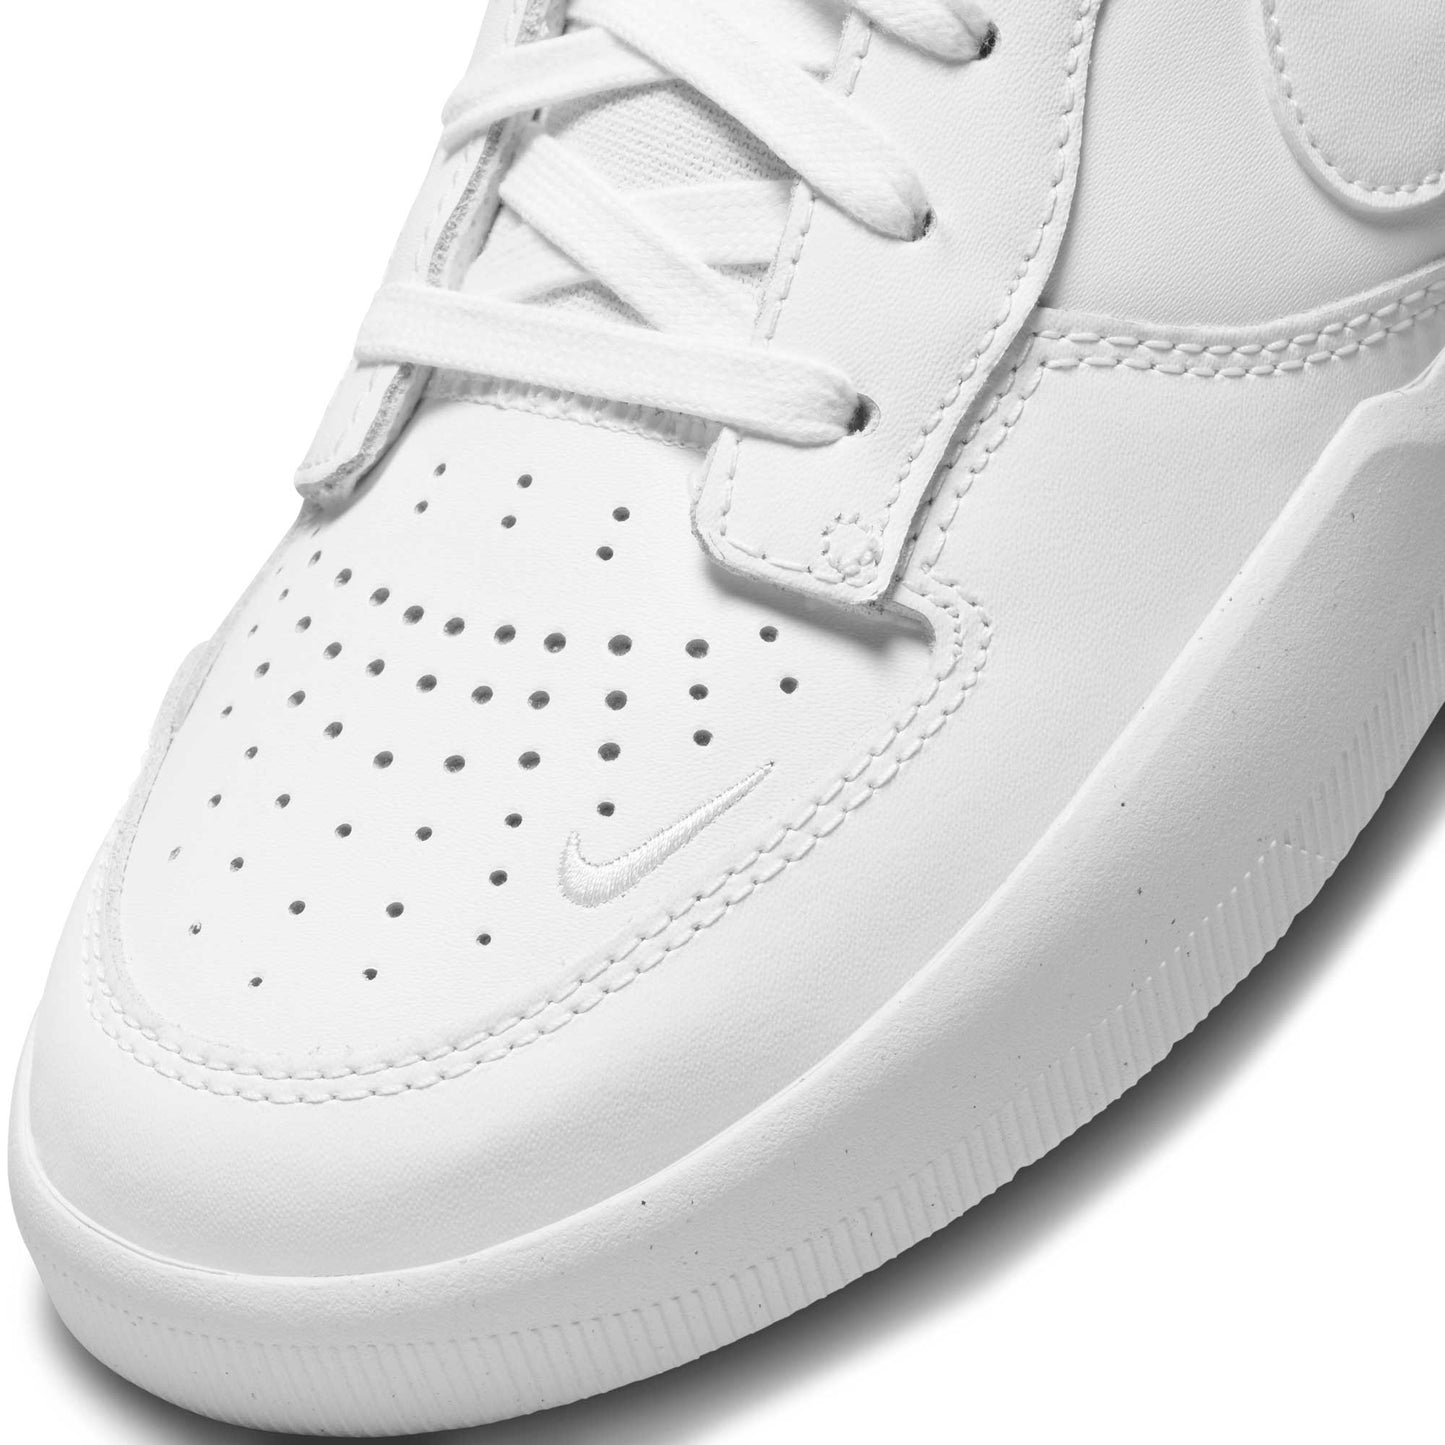 Nike SB Force 58 Premium, white/white-white-white - Tiki Room Skateboards - 9